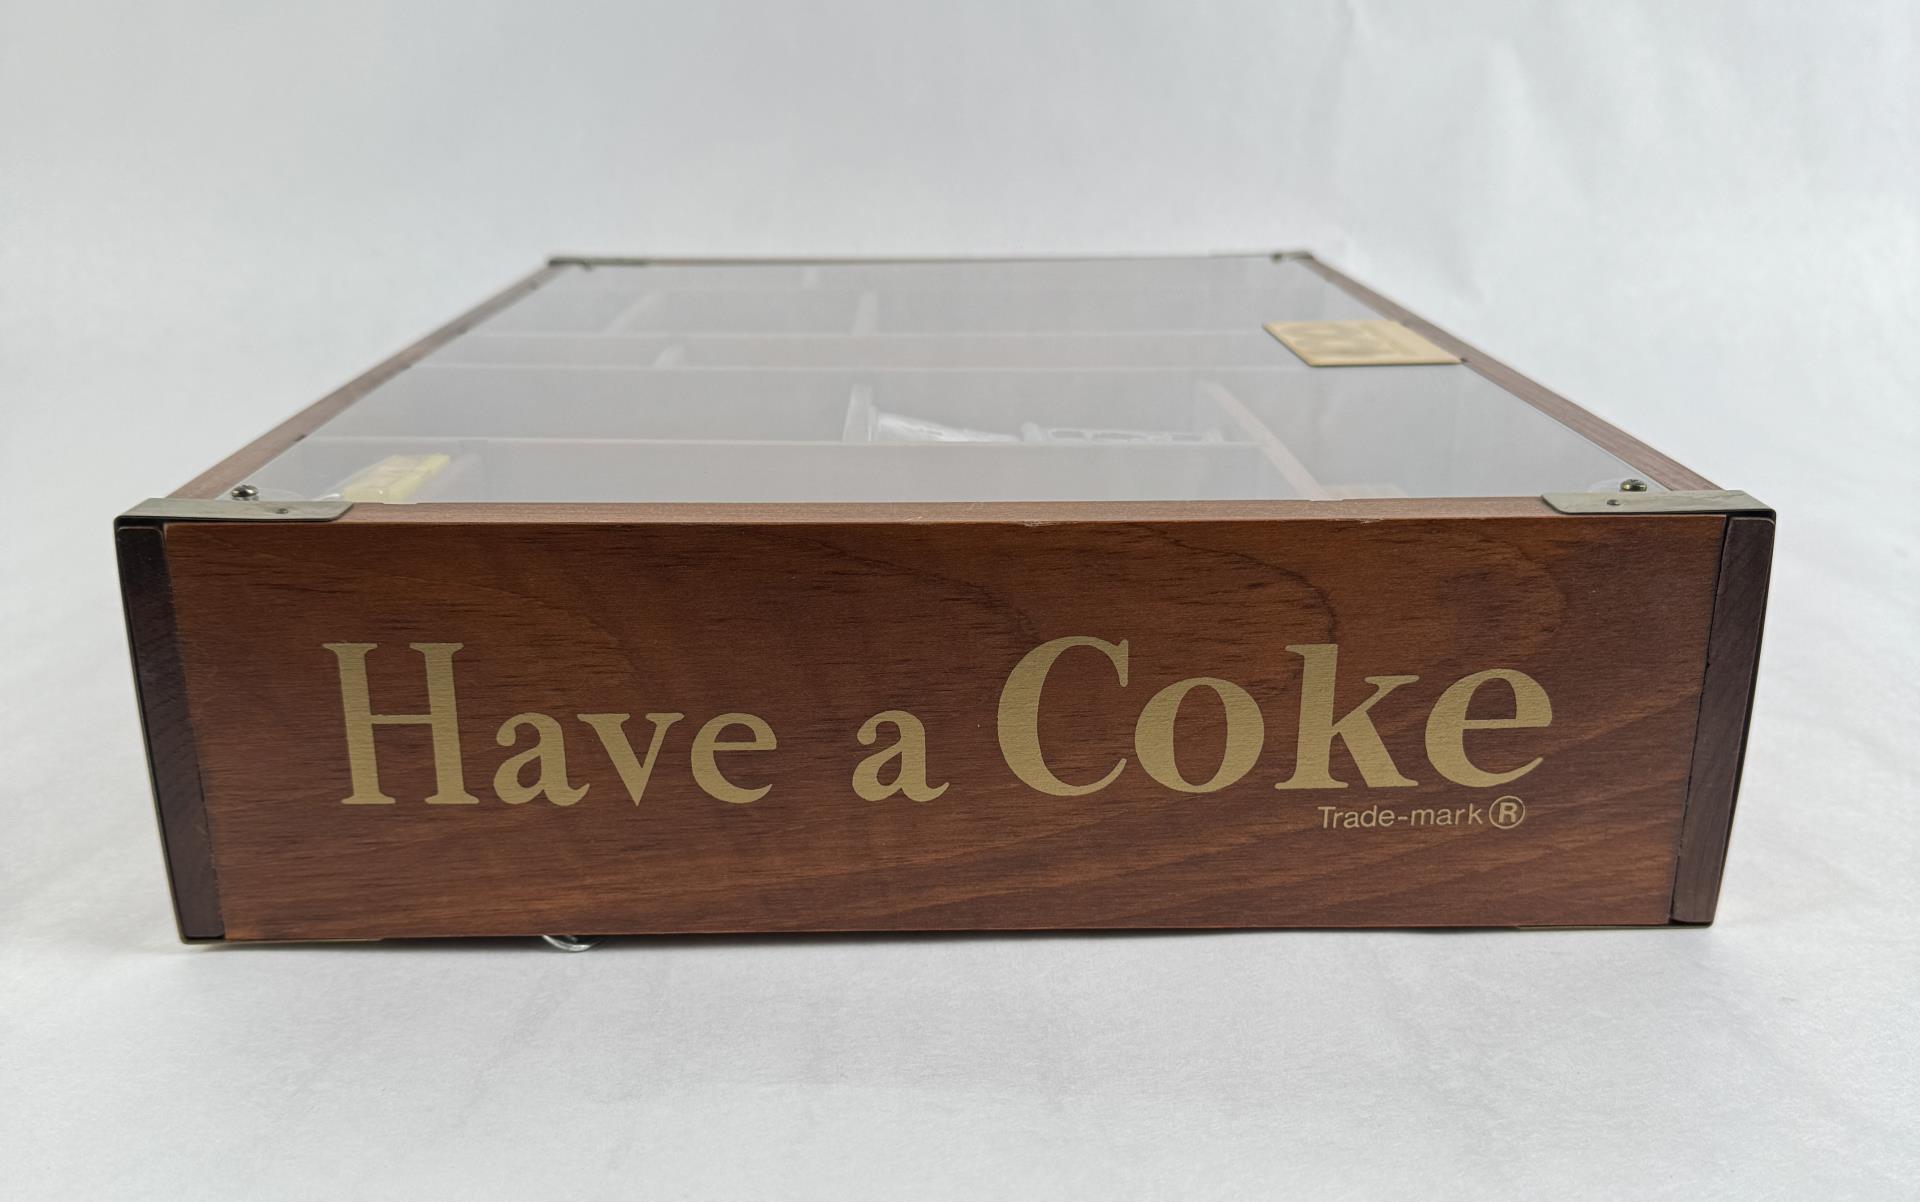 Coca Cola Centennial Display Case Shadow Box